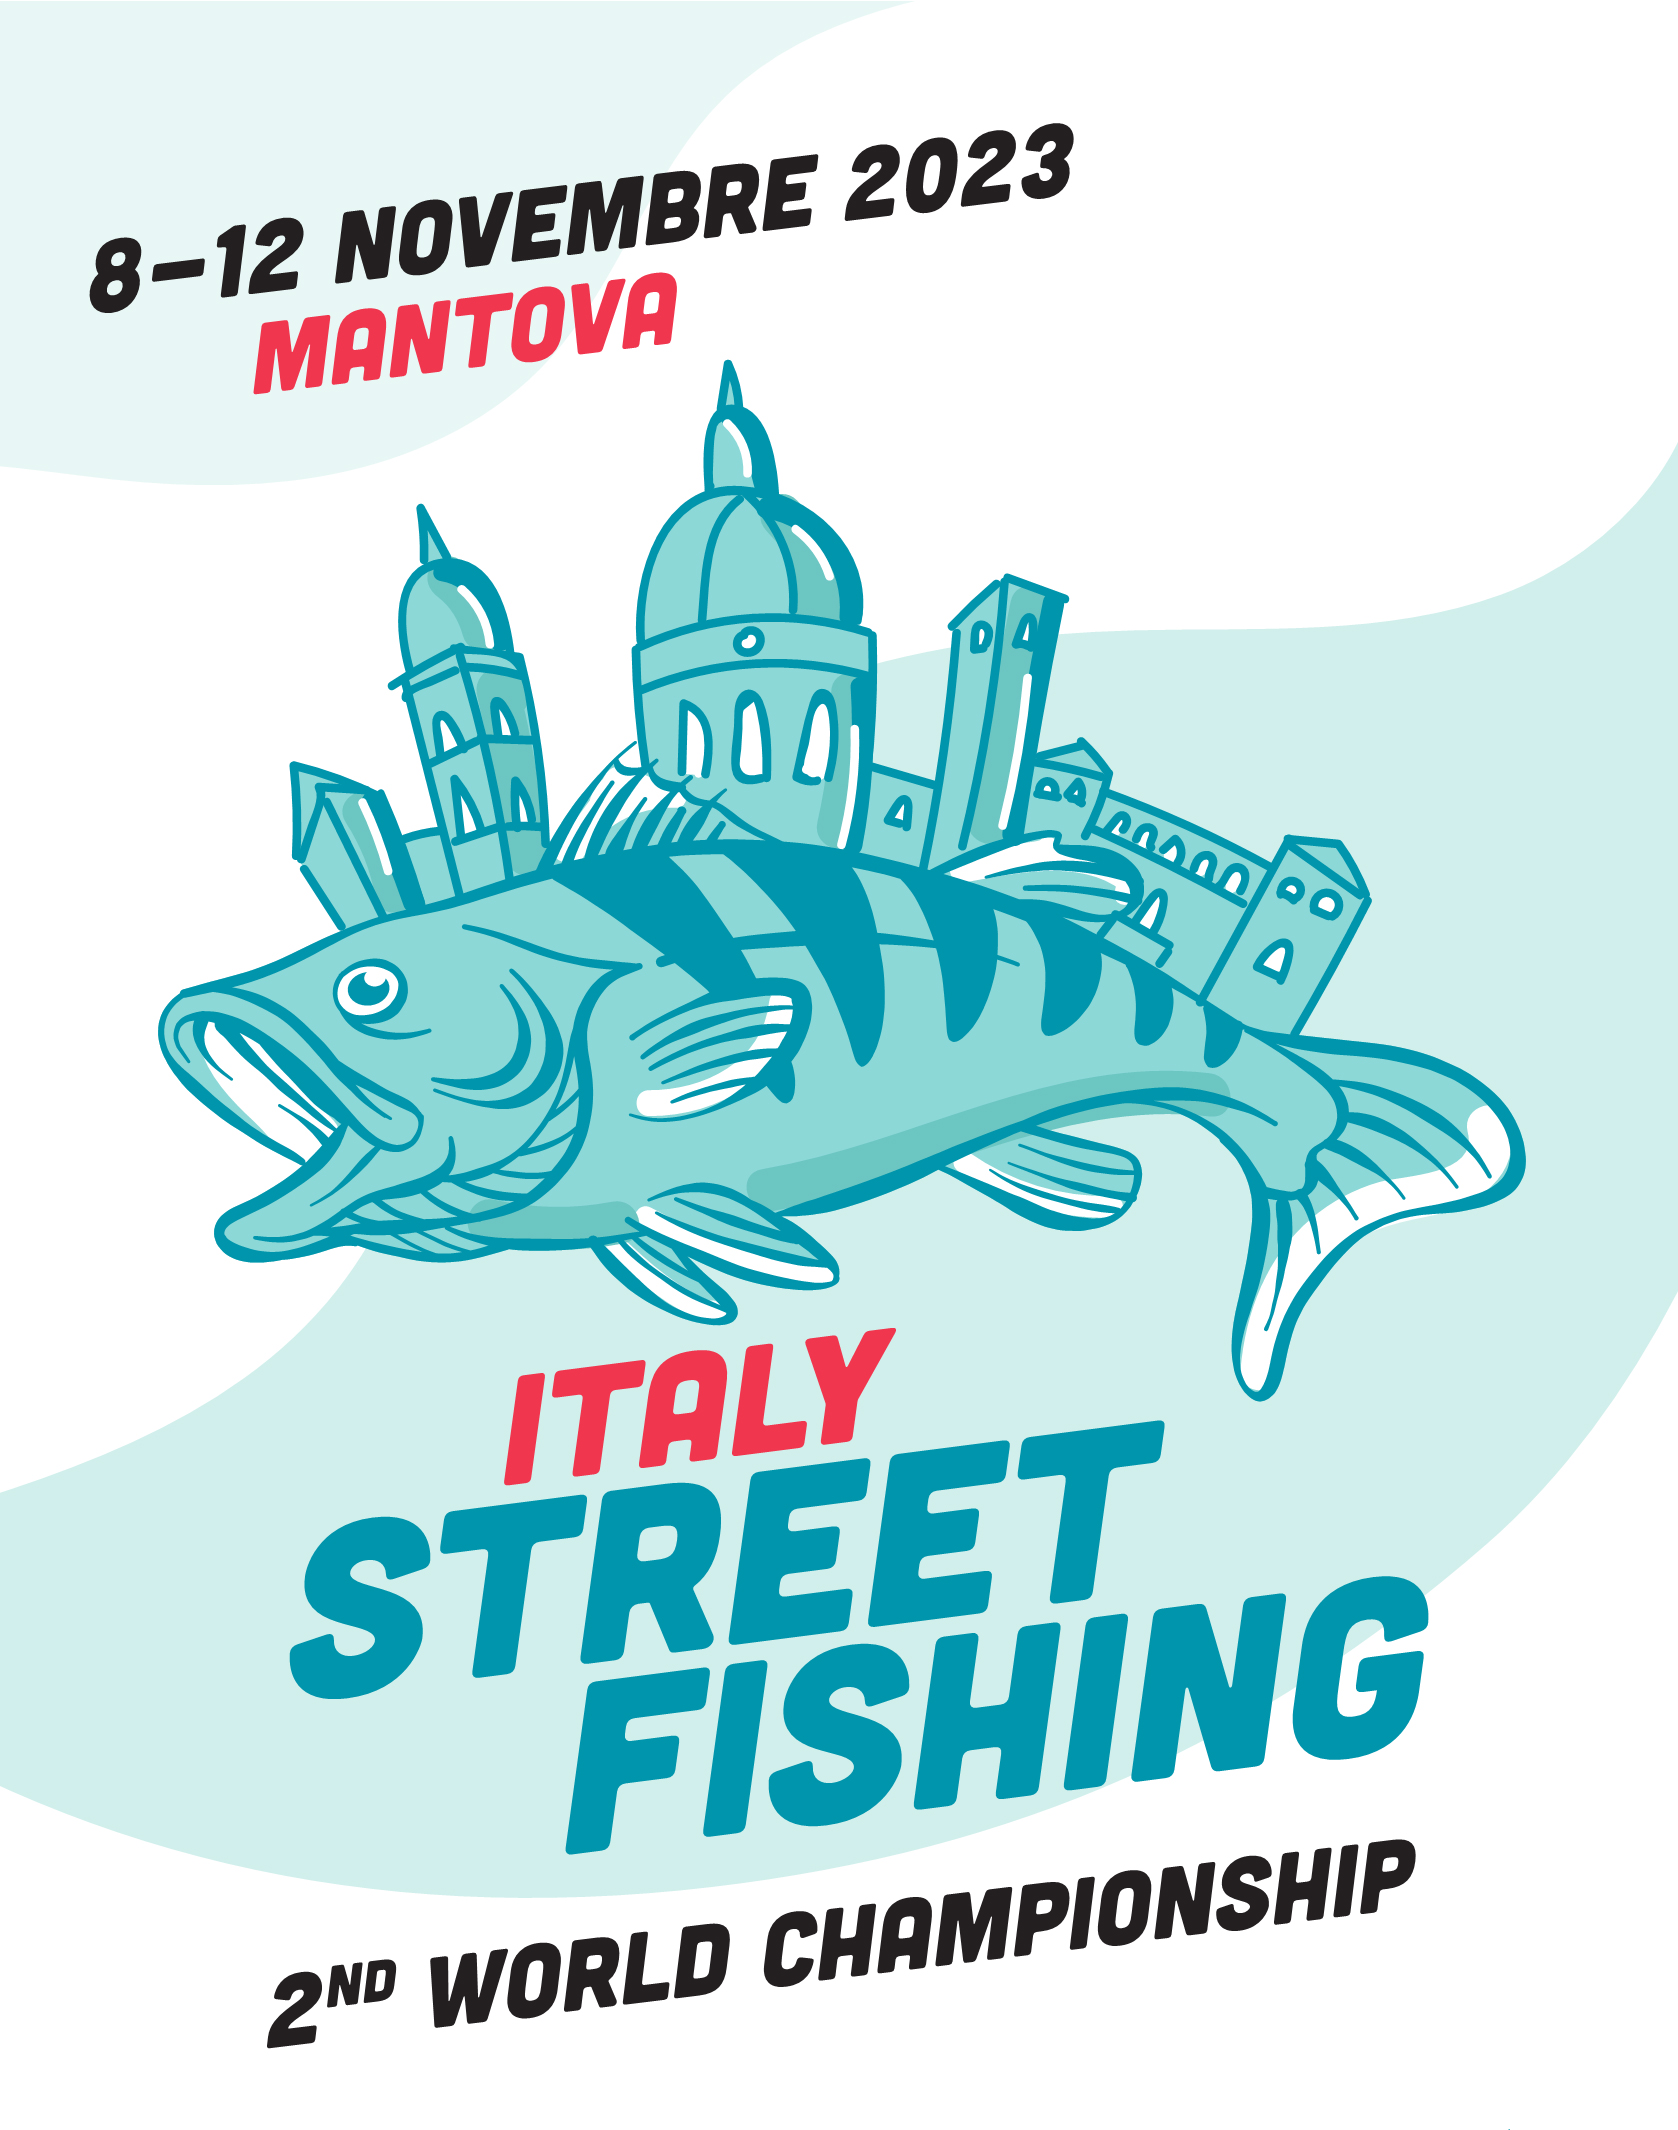 Iron Fishing a pieno supporto della F.i.p.s.a.s. al Mondiale di Streetfishing a Mantova dall’ 8 al 12 Novembre 2023